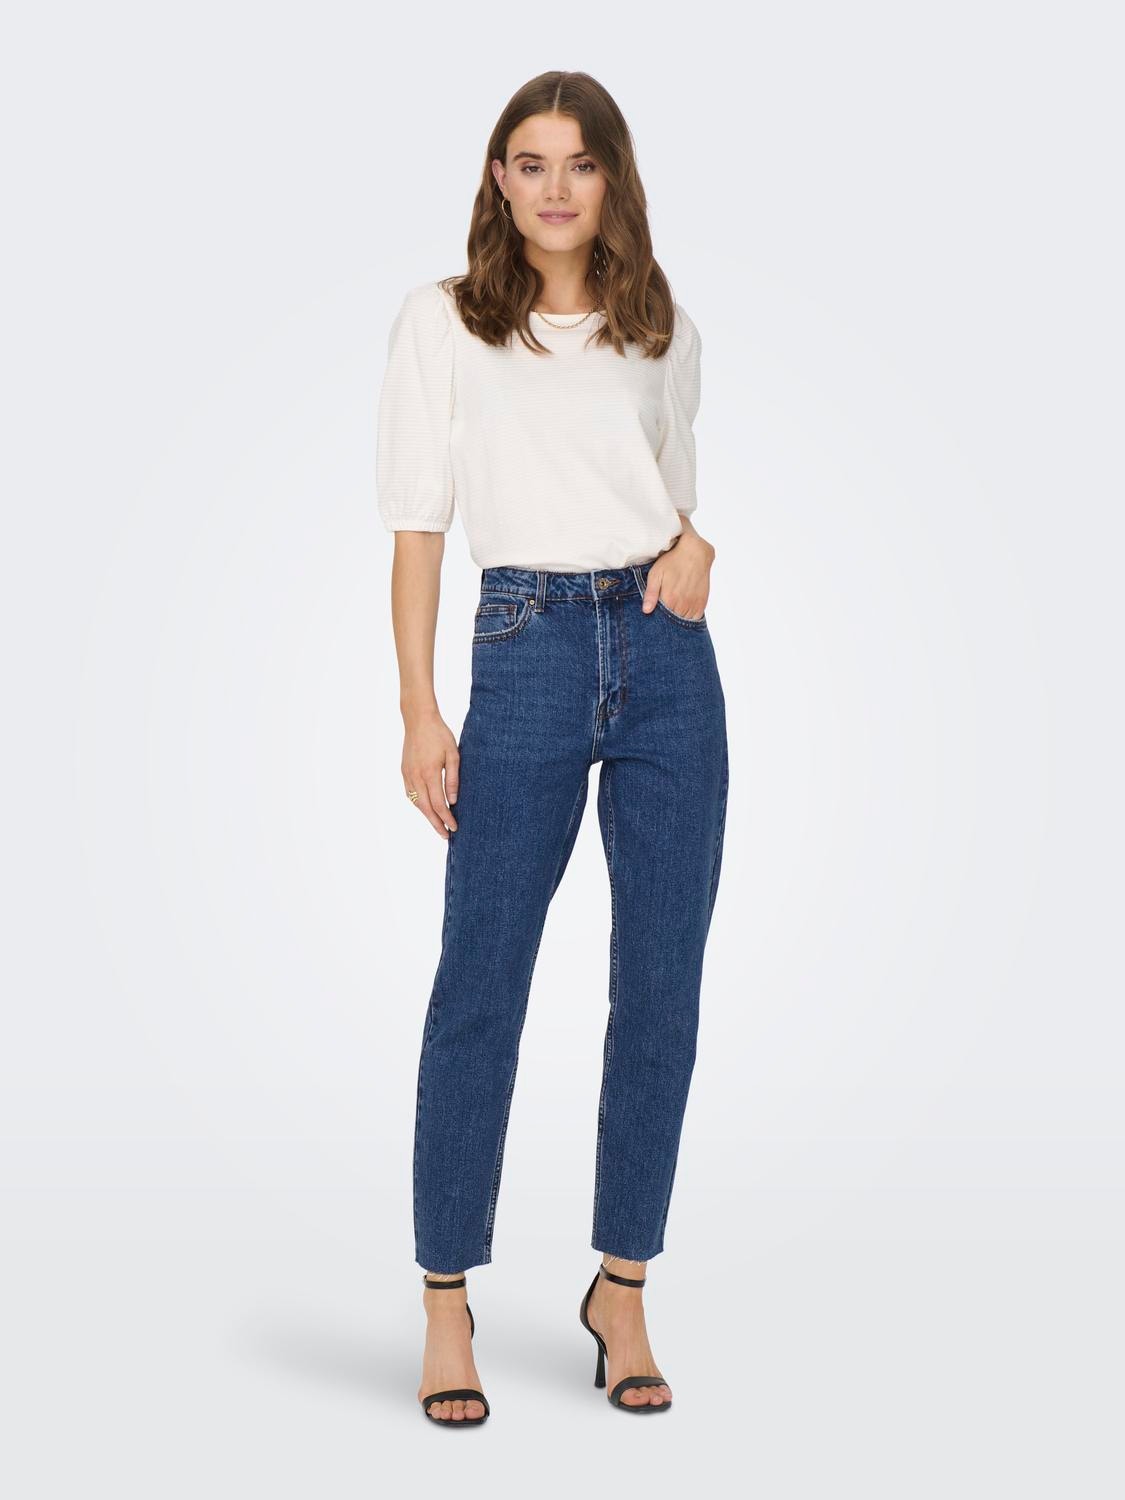 ONLY ONLEmily hw Jeans straight fit -Dark Blue Denim - 15171549